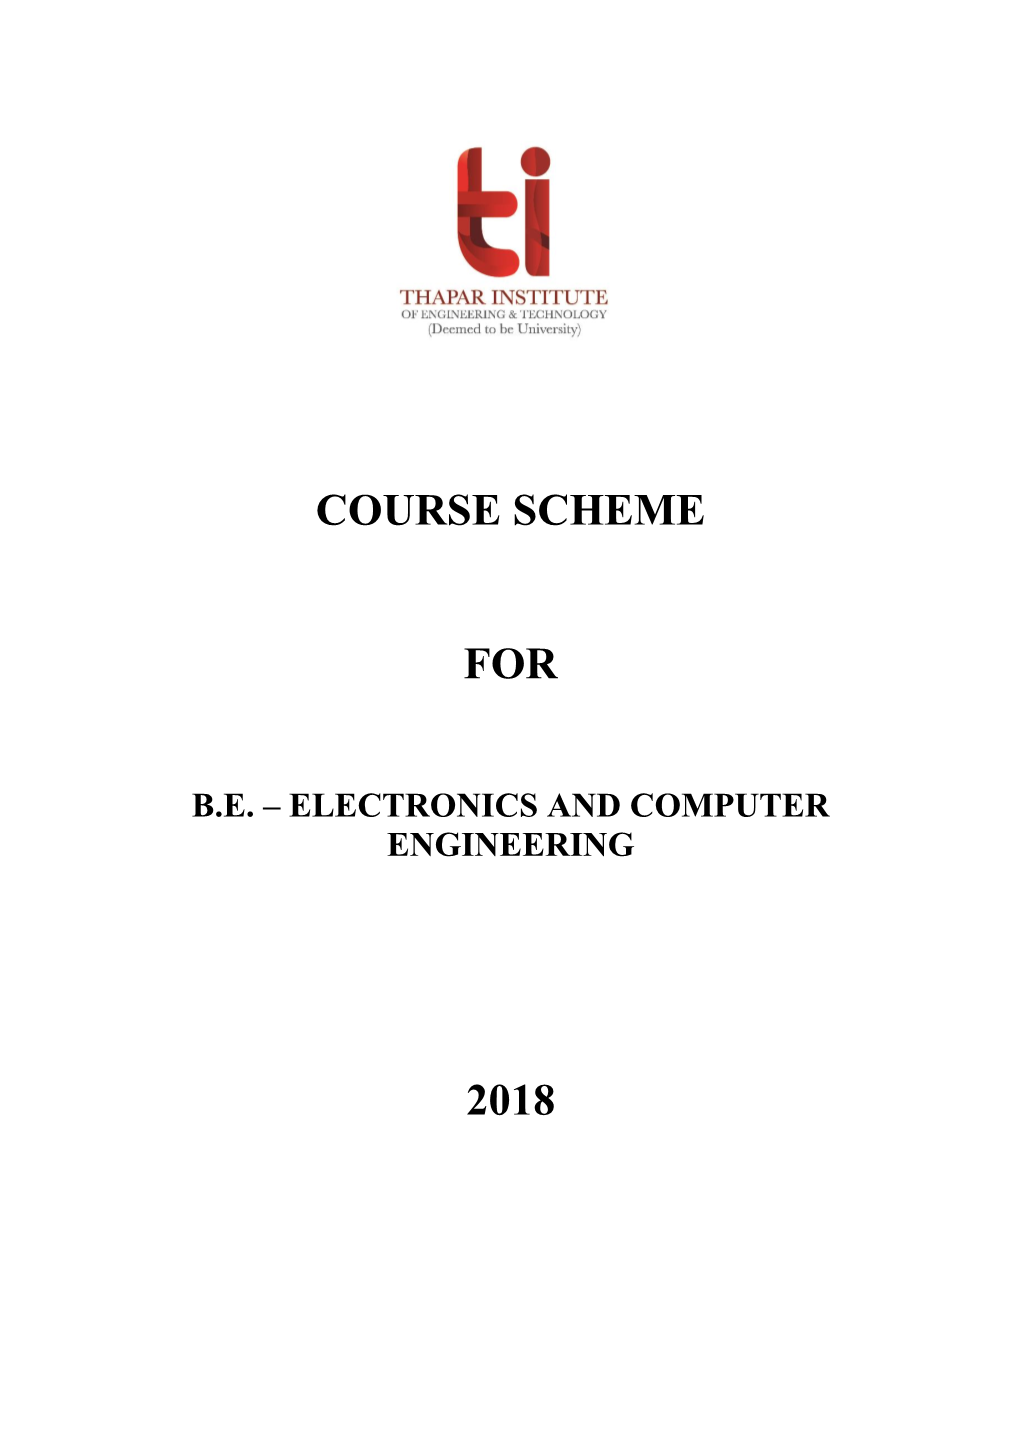 Course Scheme for 2018